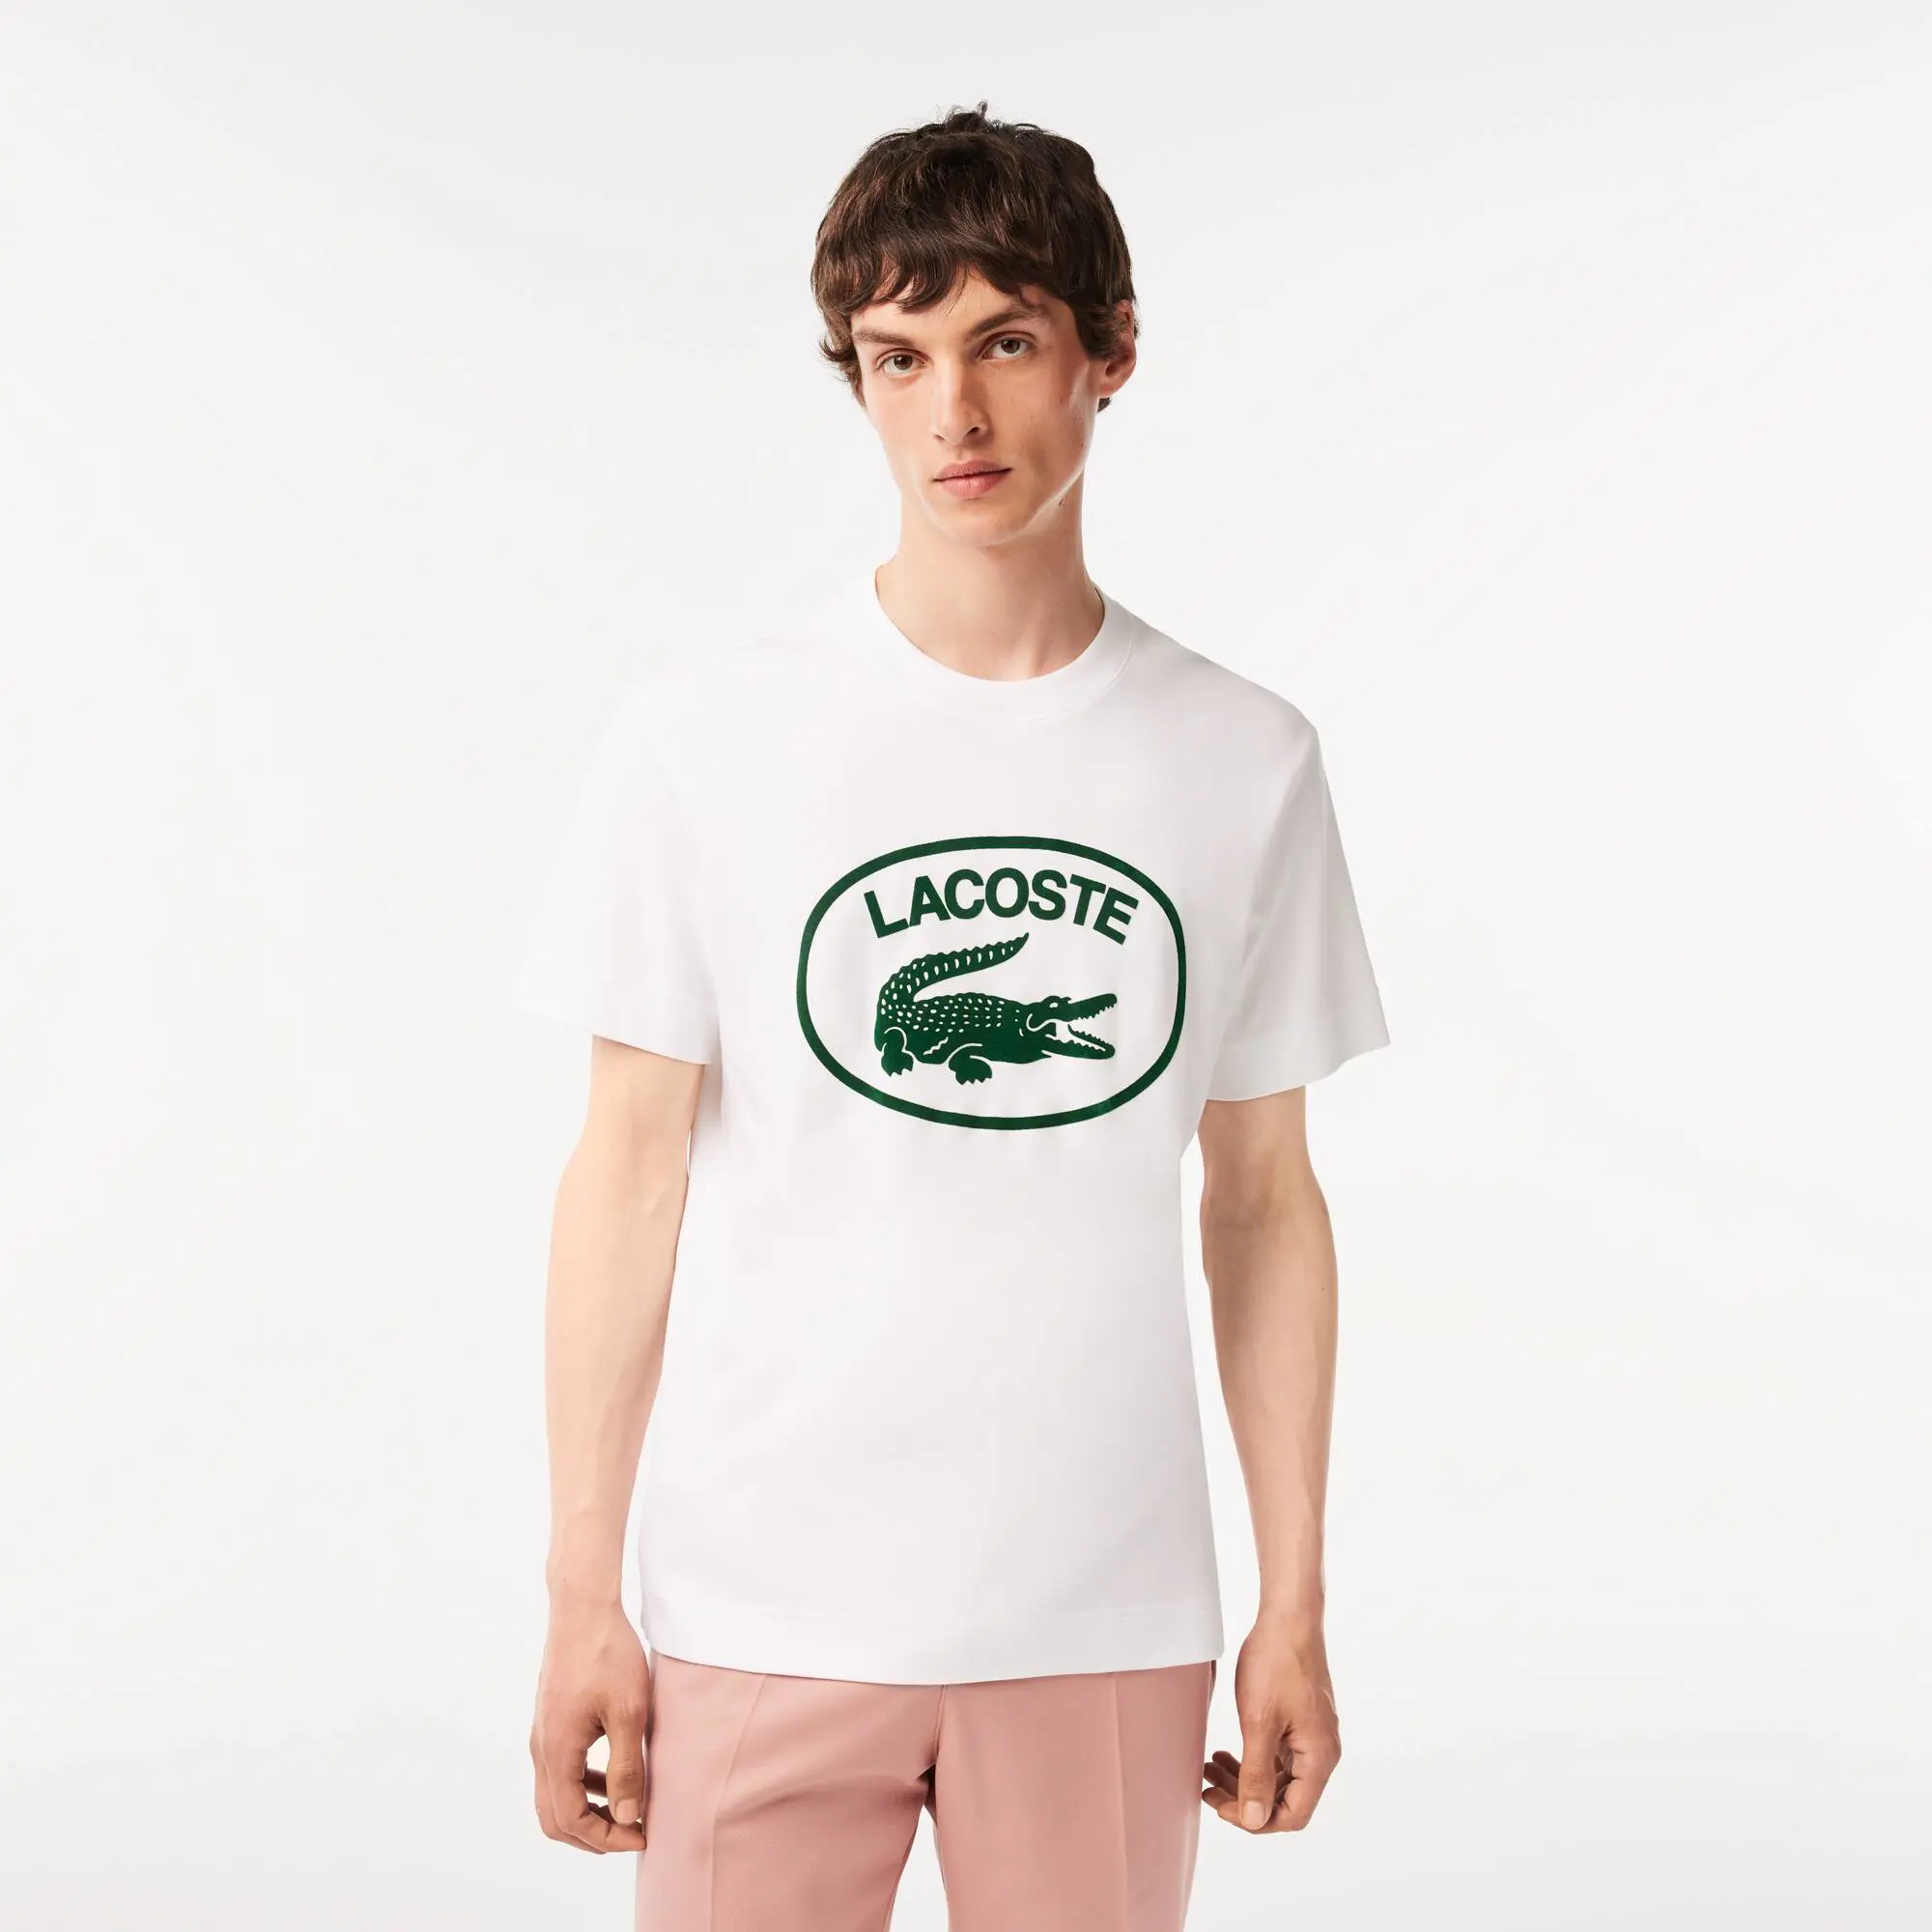 Lacoste Camiseta de hombre Lacoste relaxed fit en algodón con detalles de la marca a tono. 1